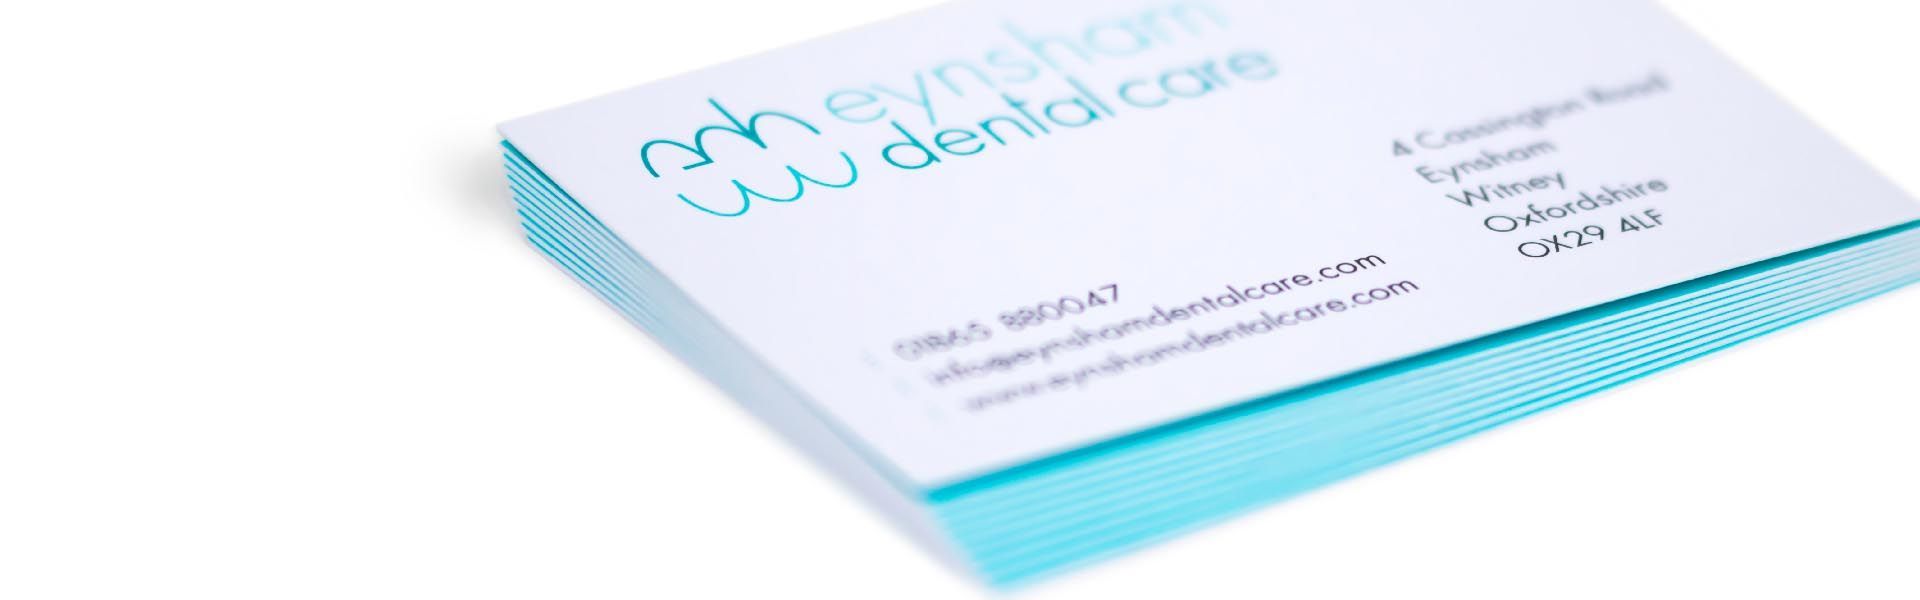 a stack of business cards for eynsham dental care